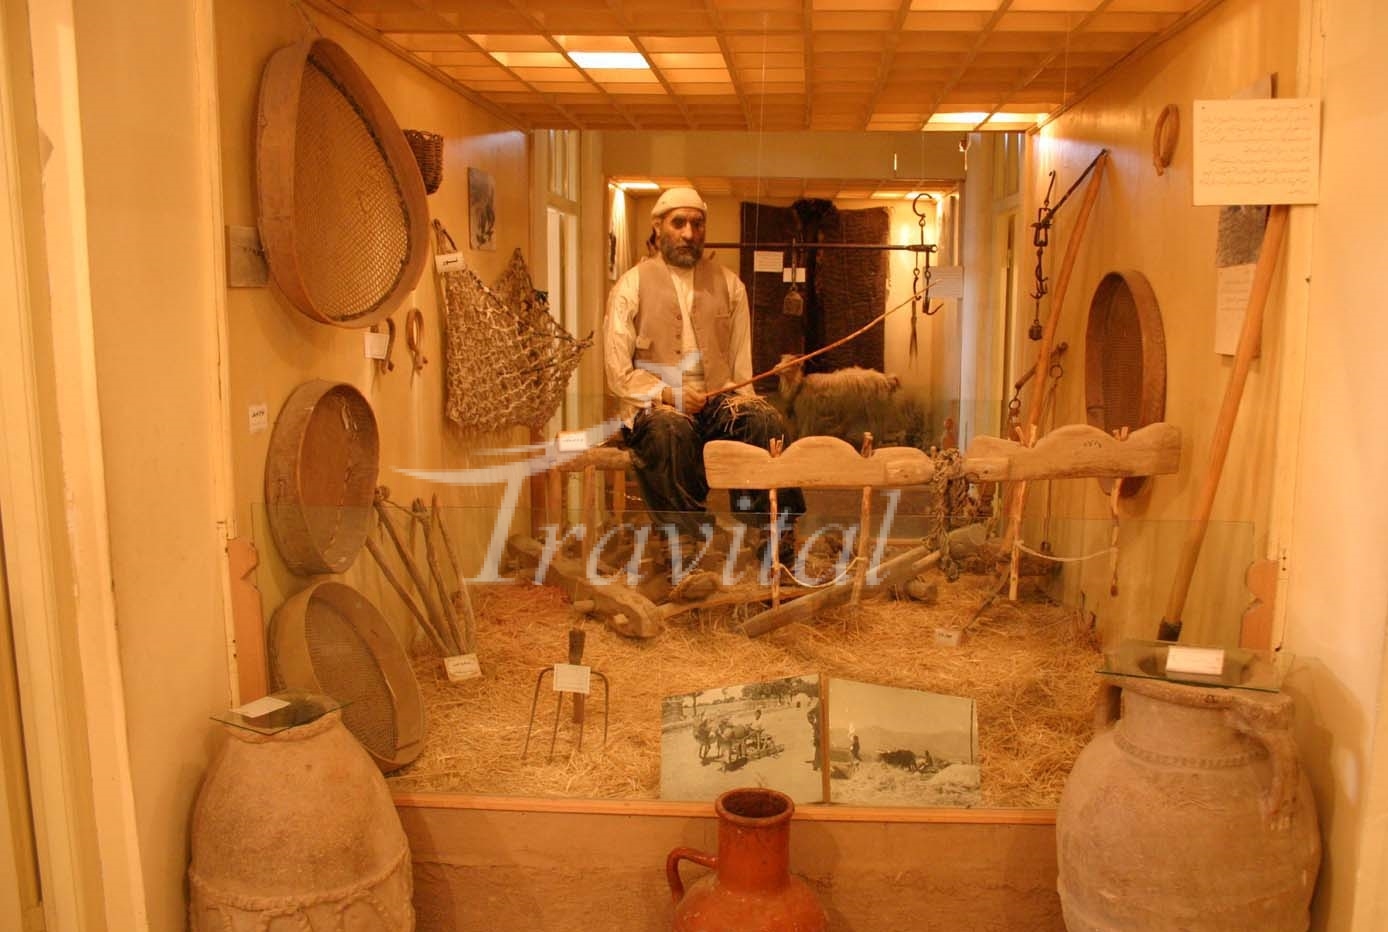 Shahrood Museum (Baladieh) – Shahrood